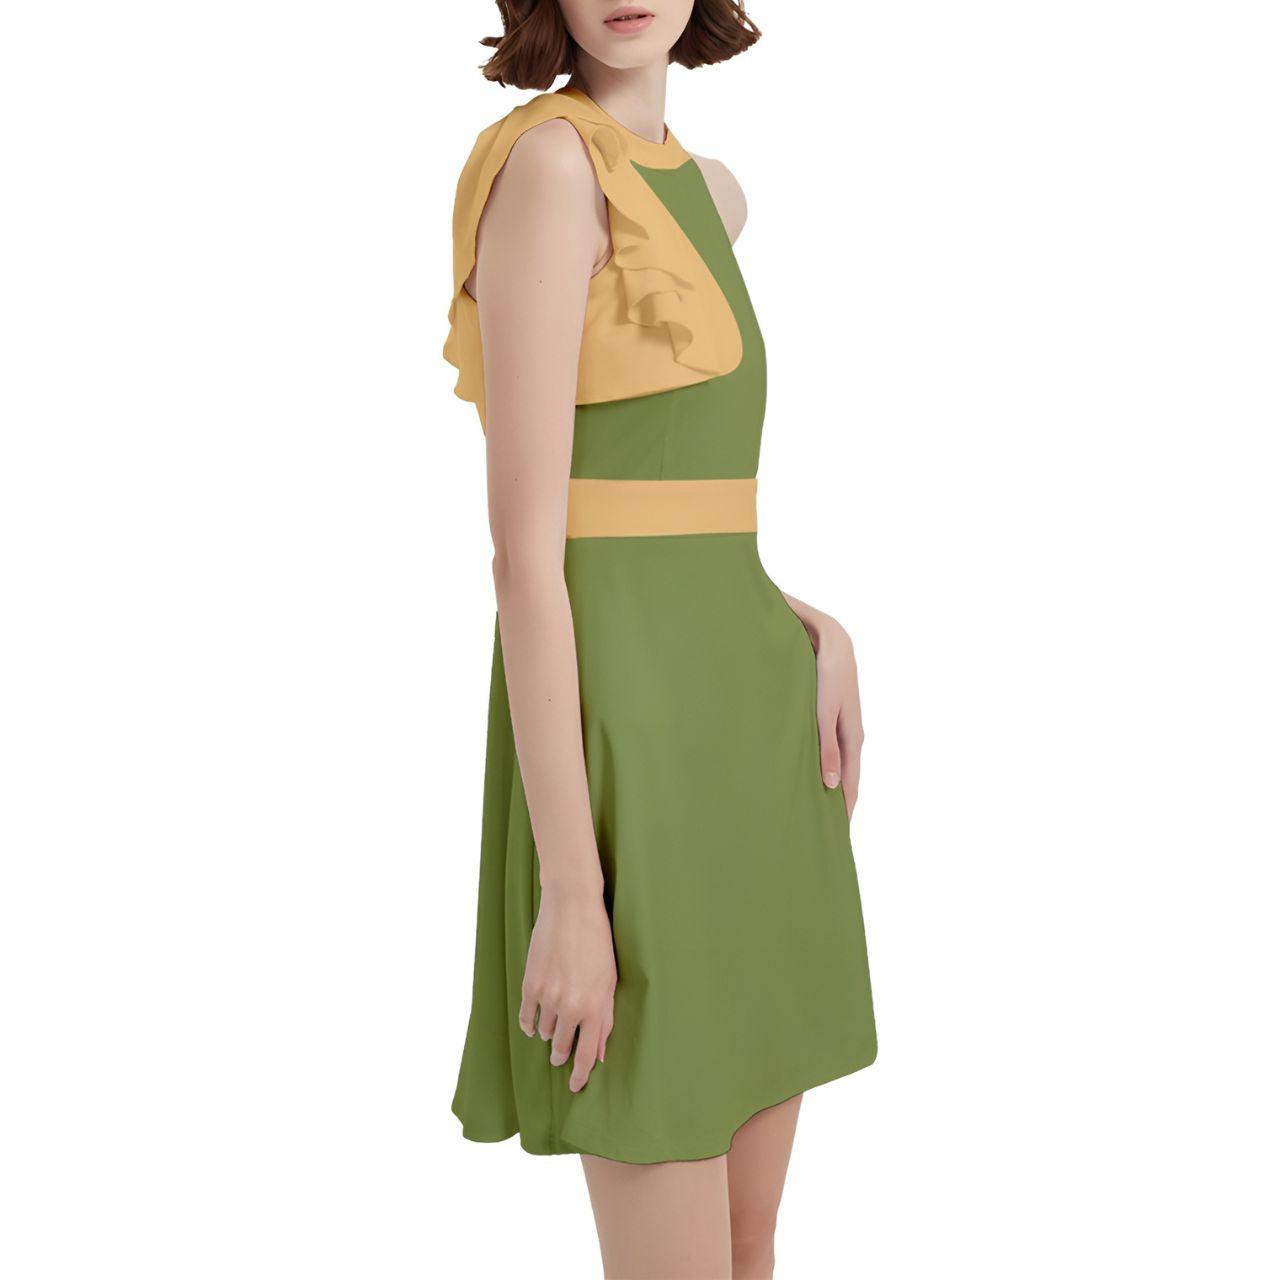 Ebisa Green & Yellow Cocktail Halter Sleeveless Dress - Blissfully Brand